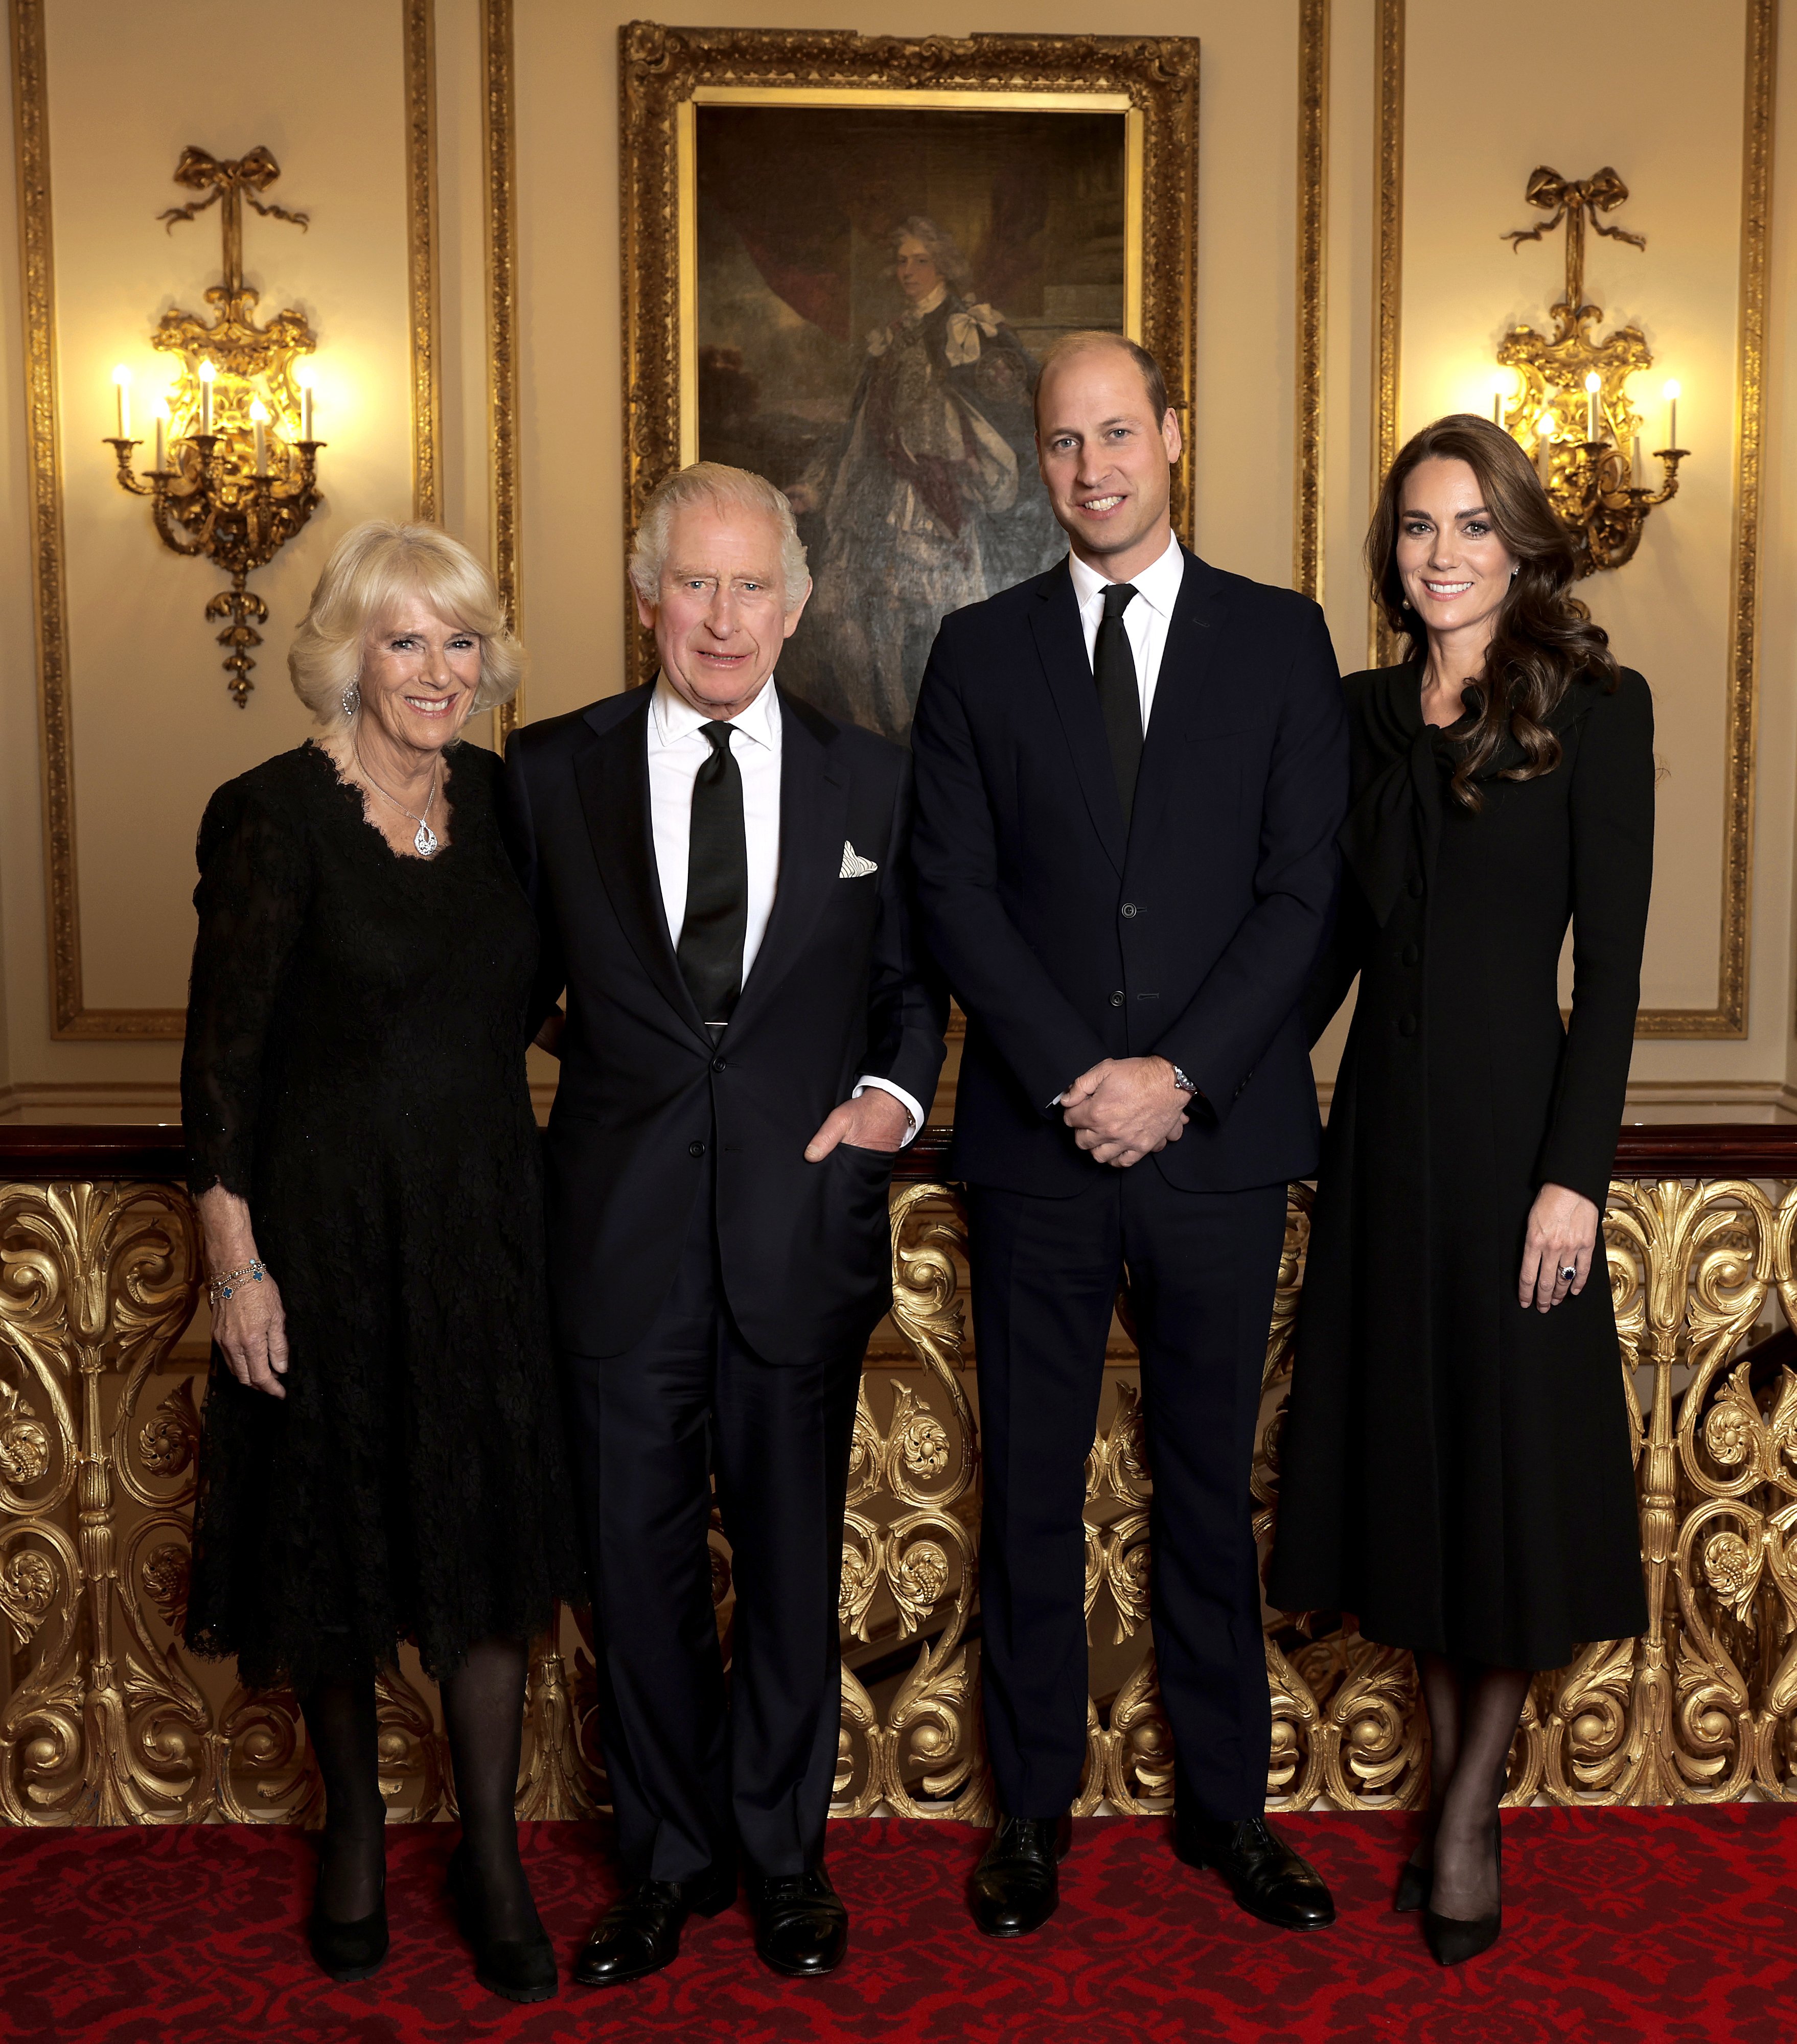 König Charles III., Königingemahlin Camilla, Prinz William und Kate Middleton in London 2022. | Quelle: Getty Images 